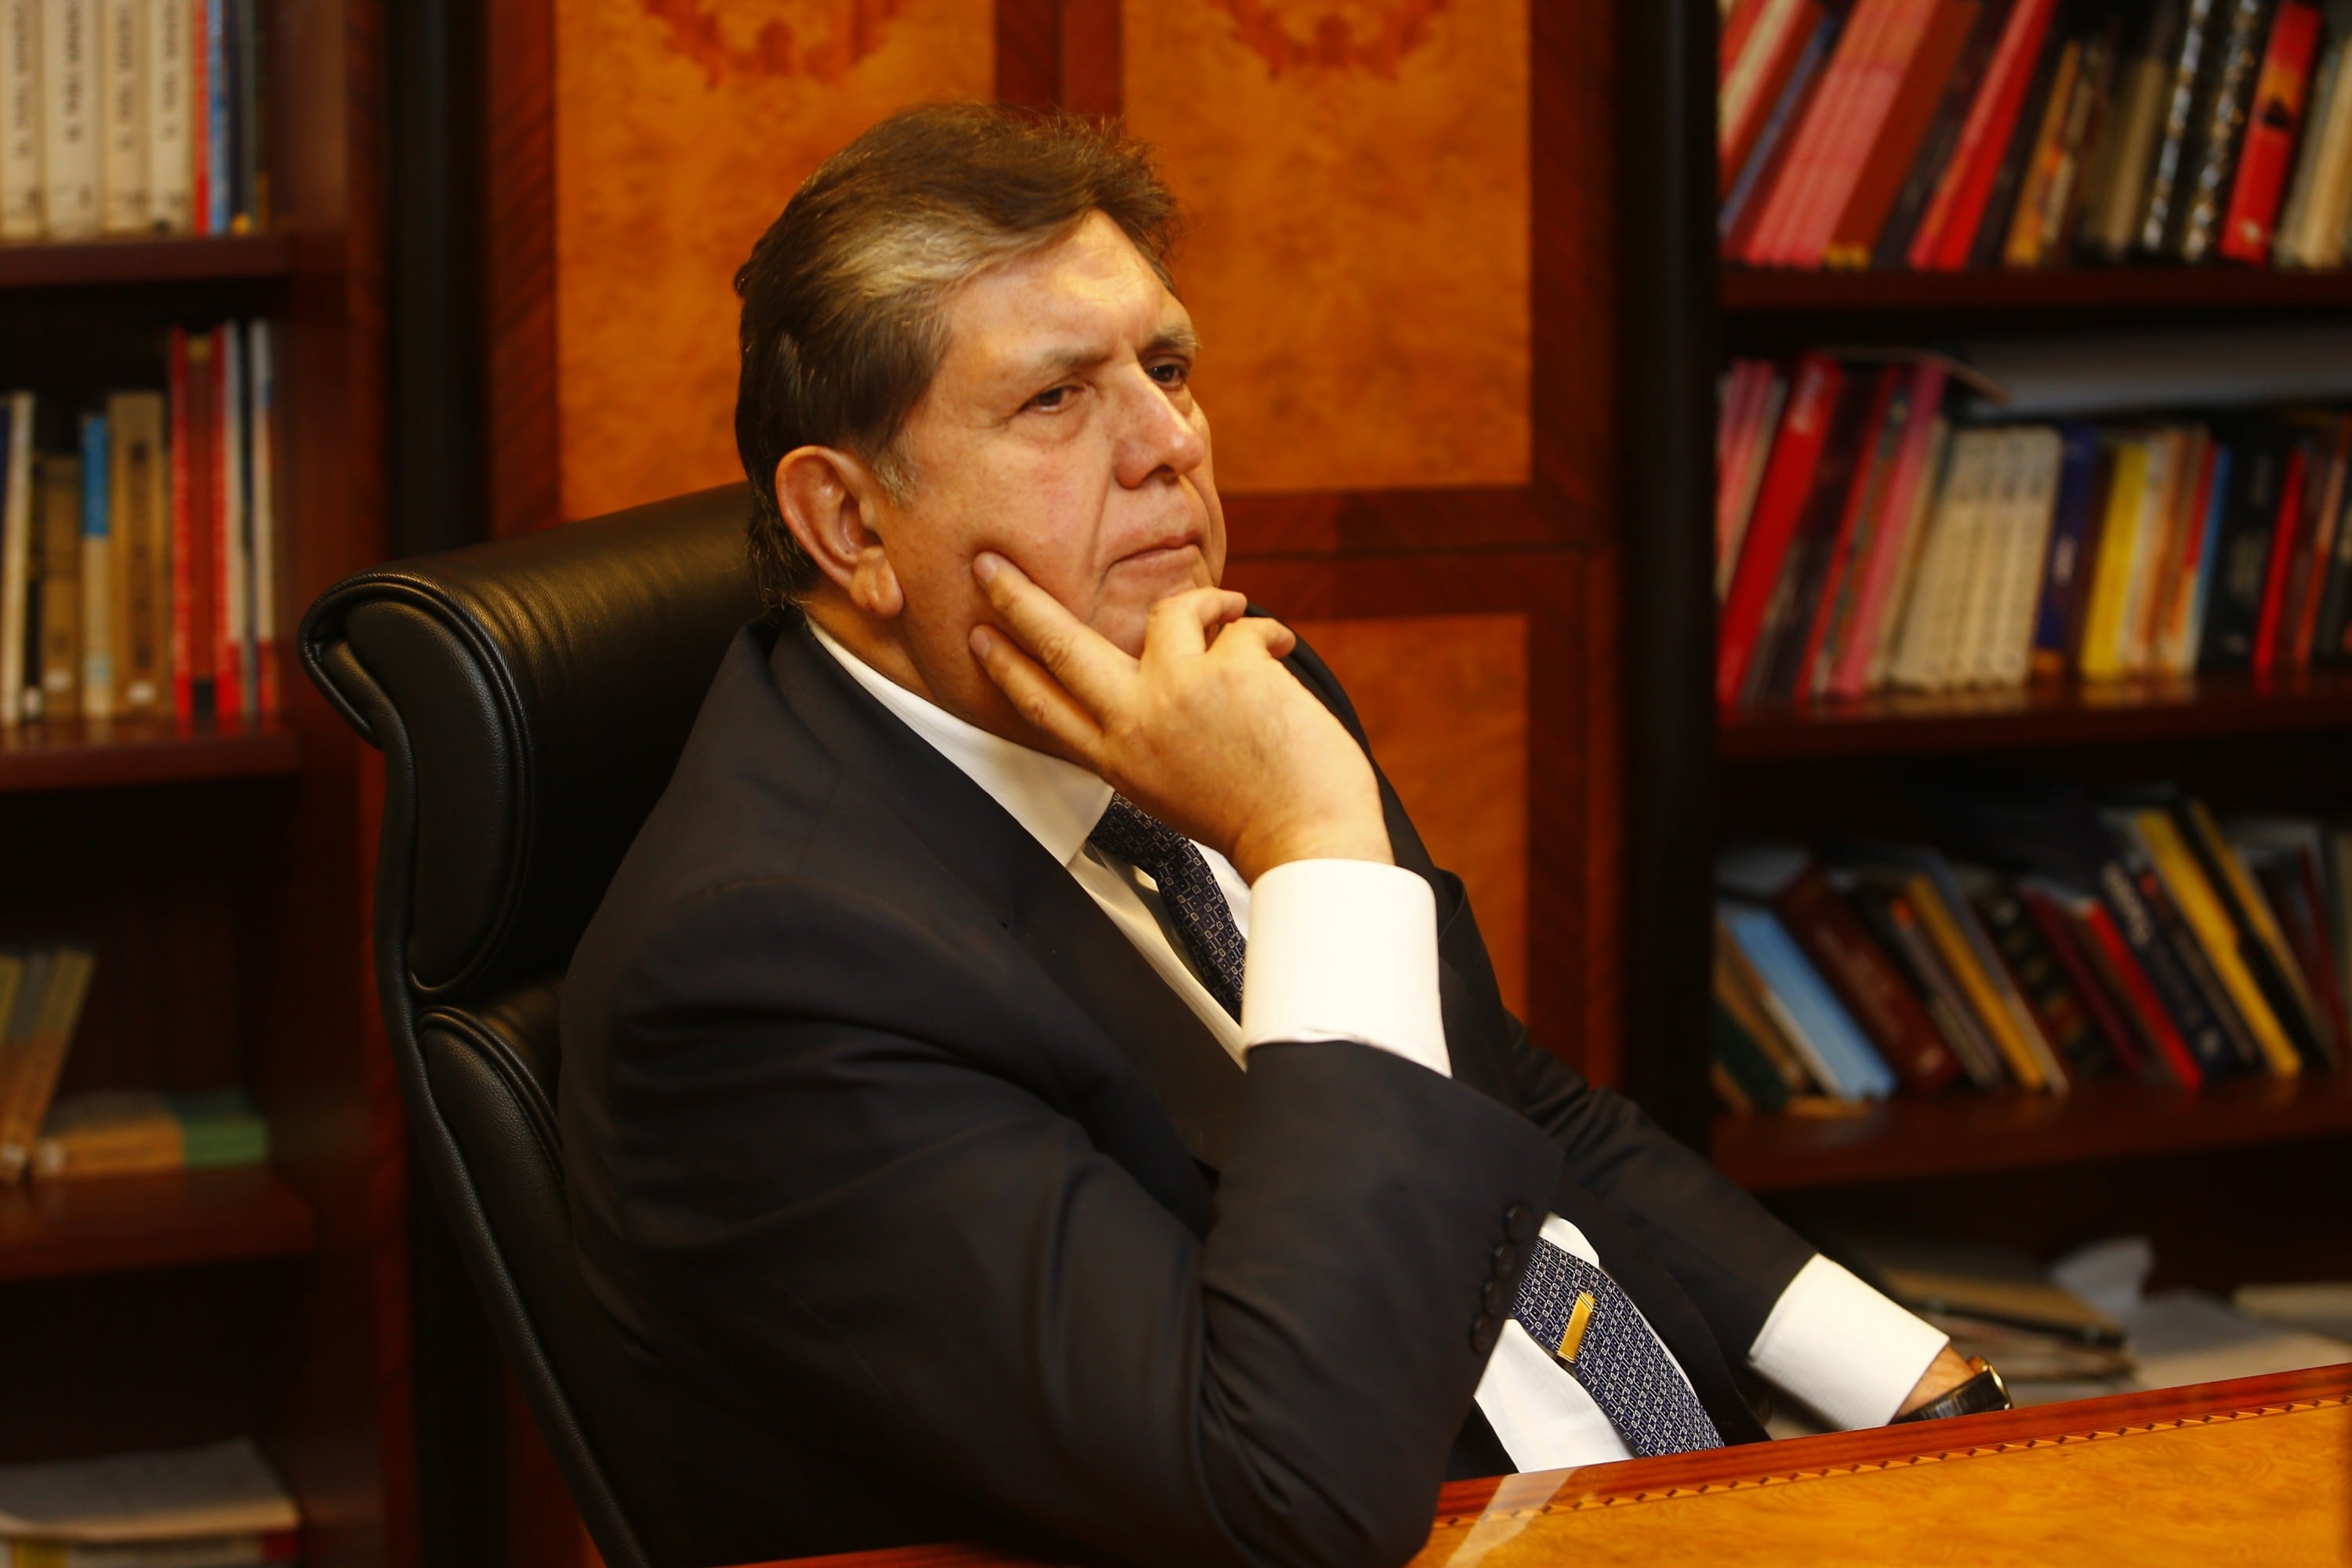 El ex presidente Alan García permanece en la residencia del embajador de Uruguay desde el sábado 17 de noviembre. (FOTO: USI)